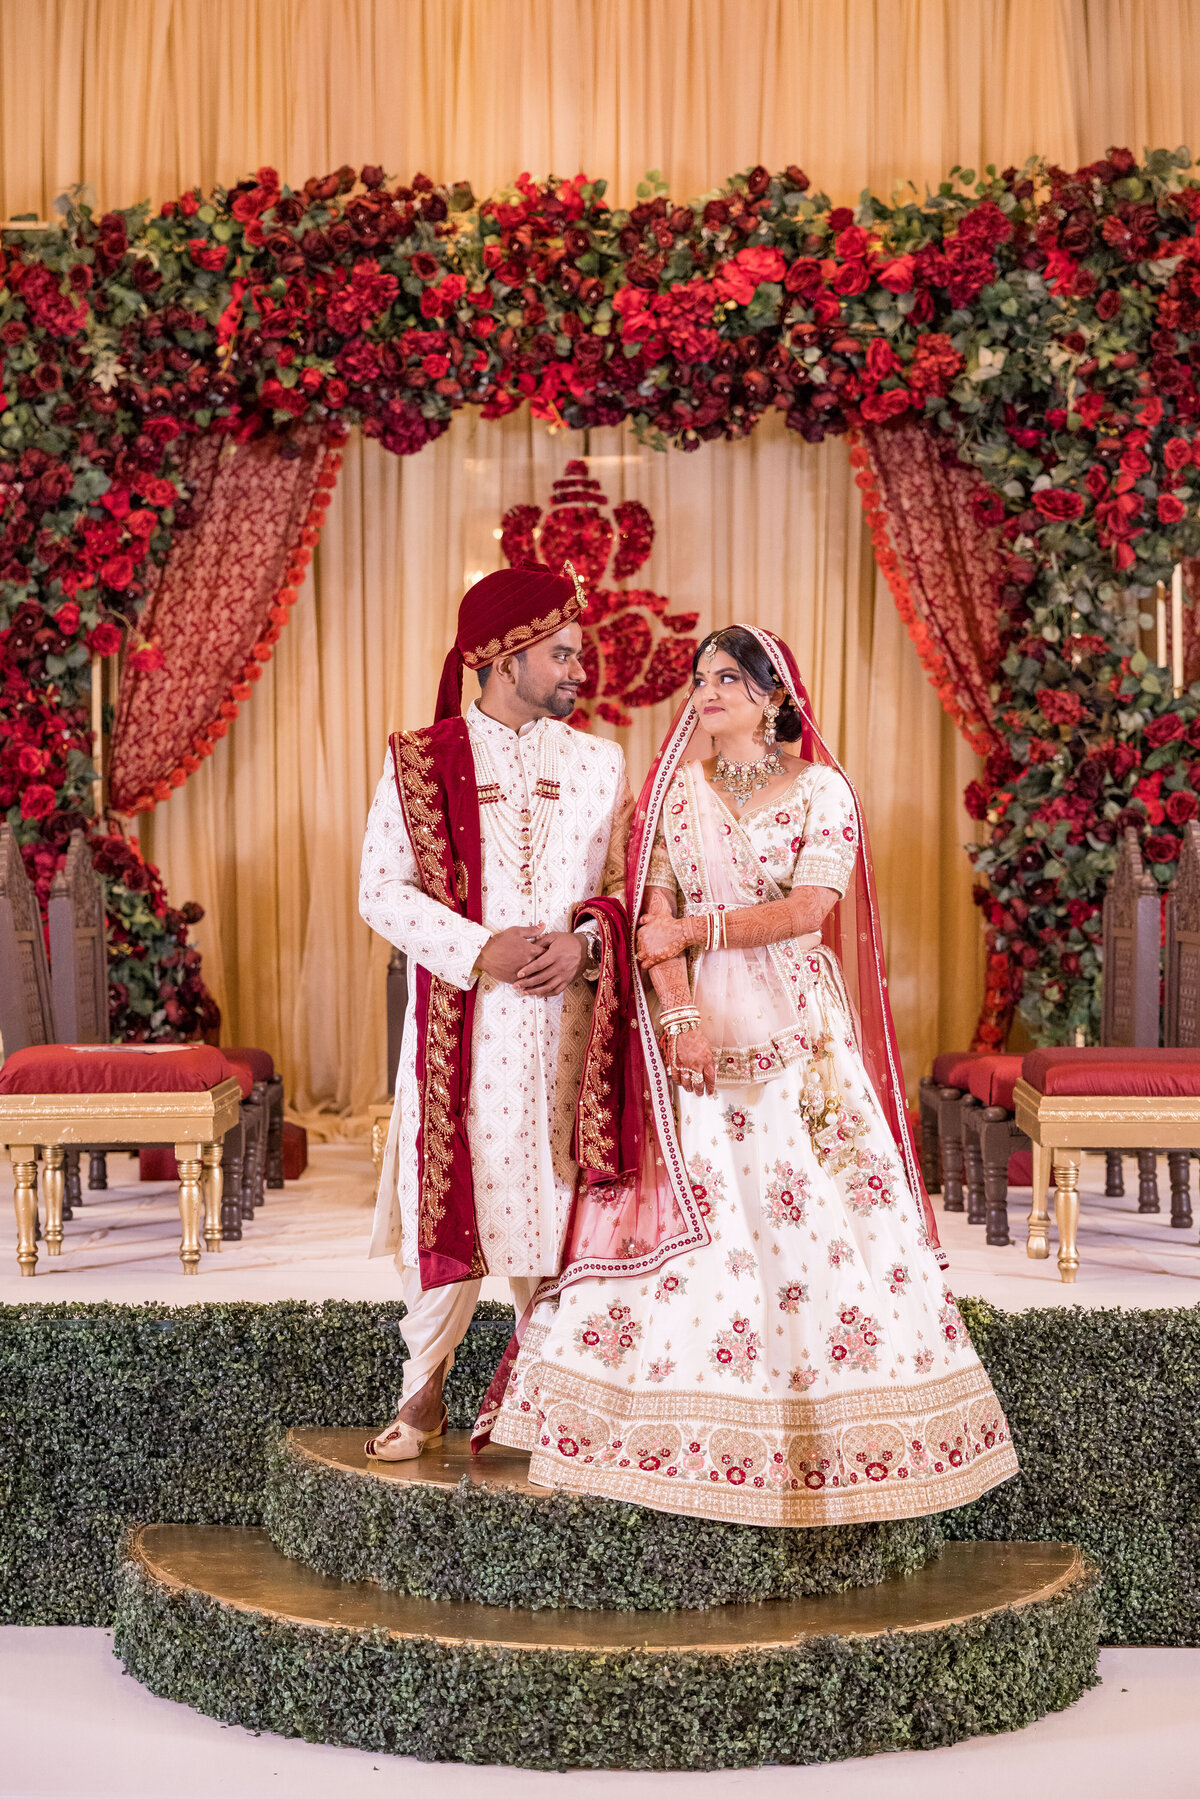 NYC-Indian-wedding-007